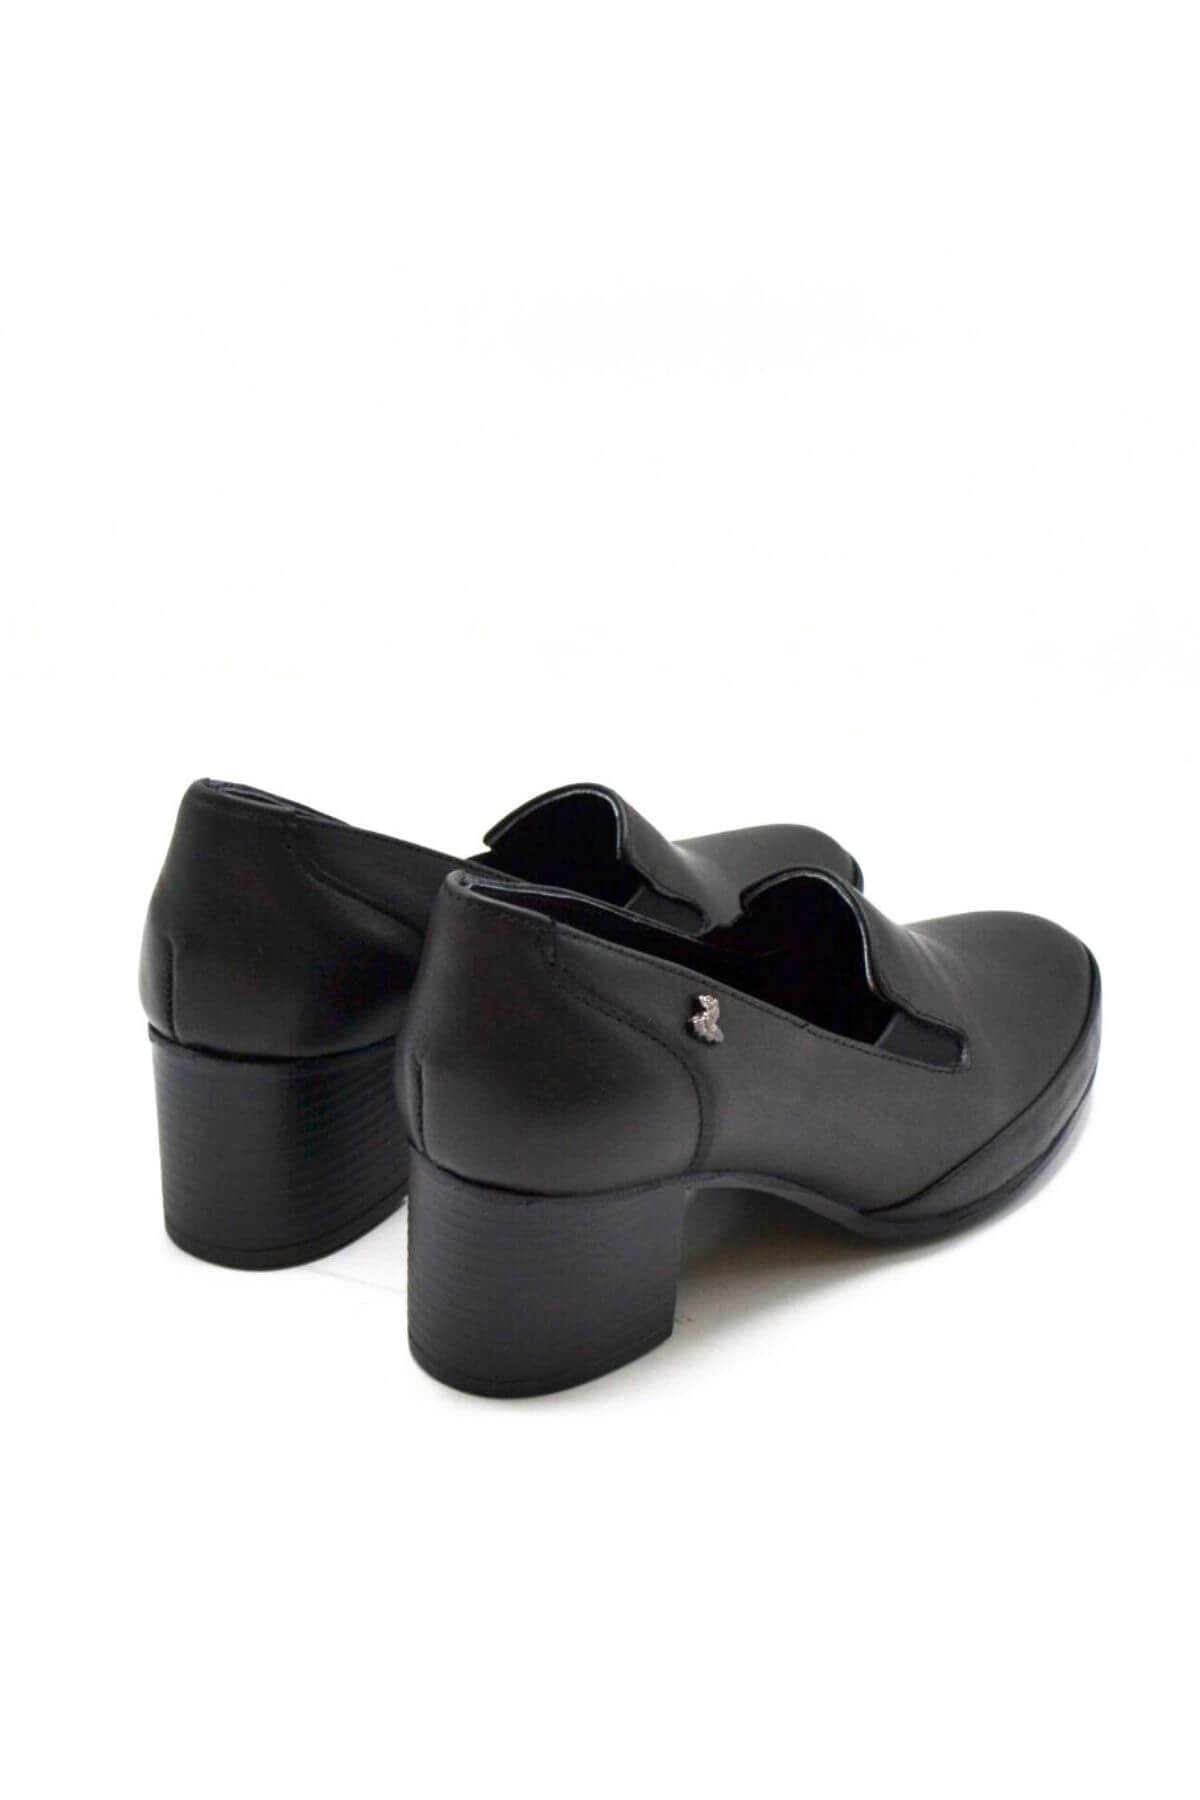 Kadın Topuklu Deri Ayakkabı Siyah 1911902K